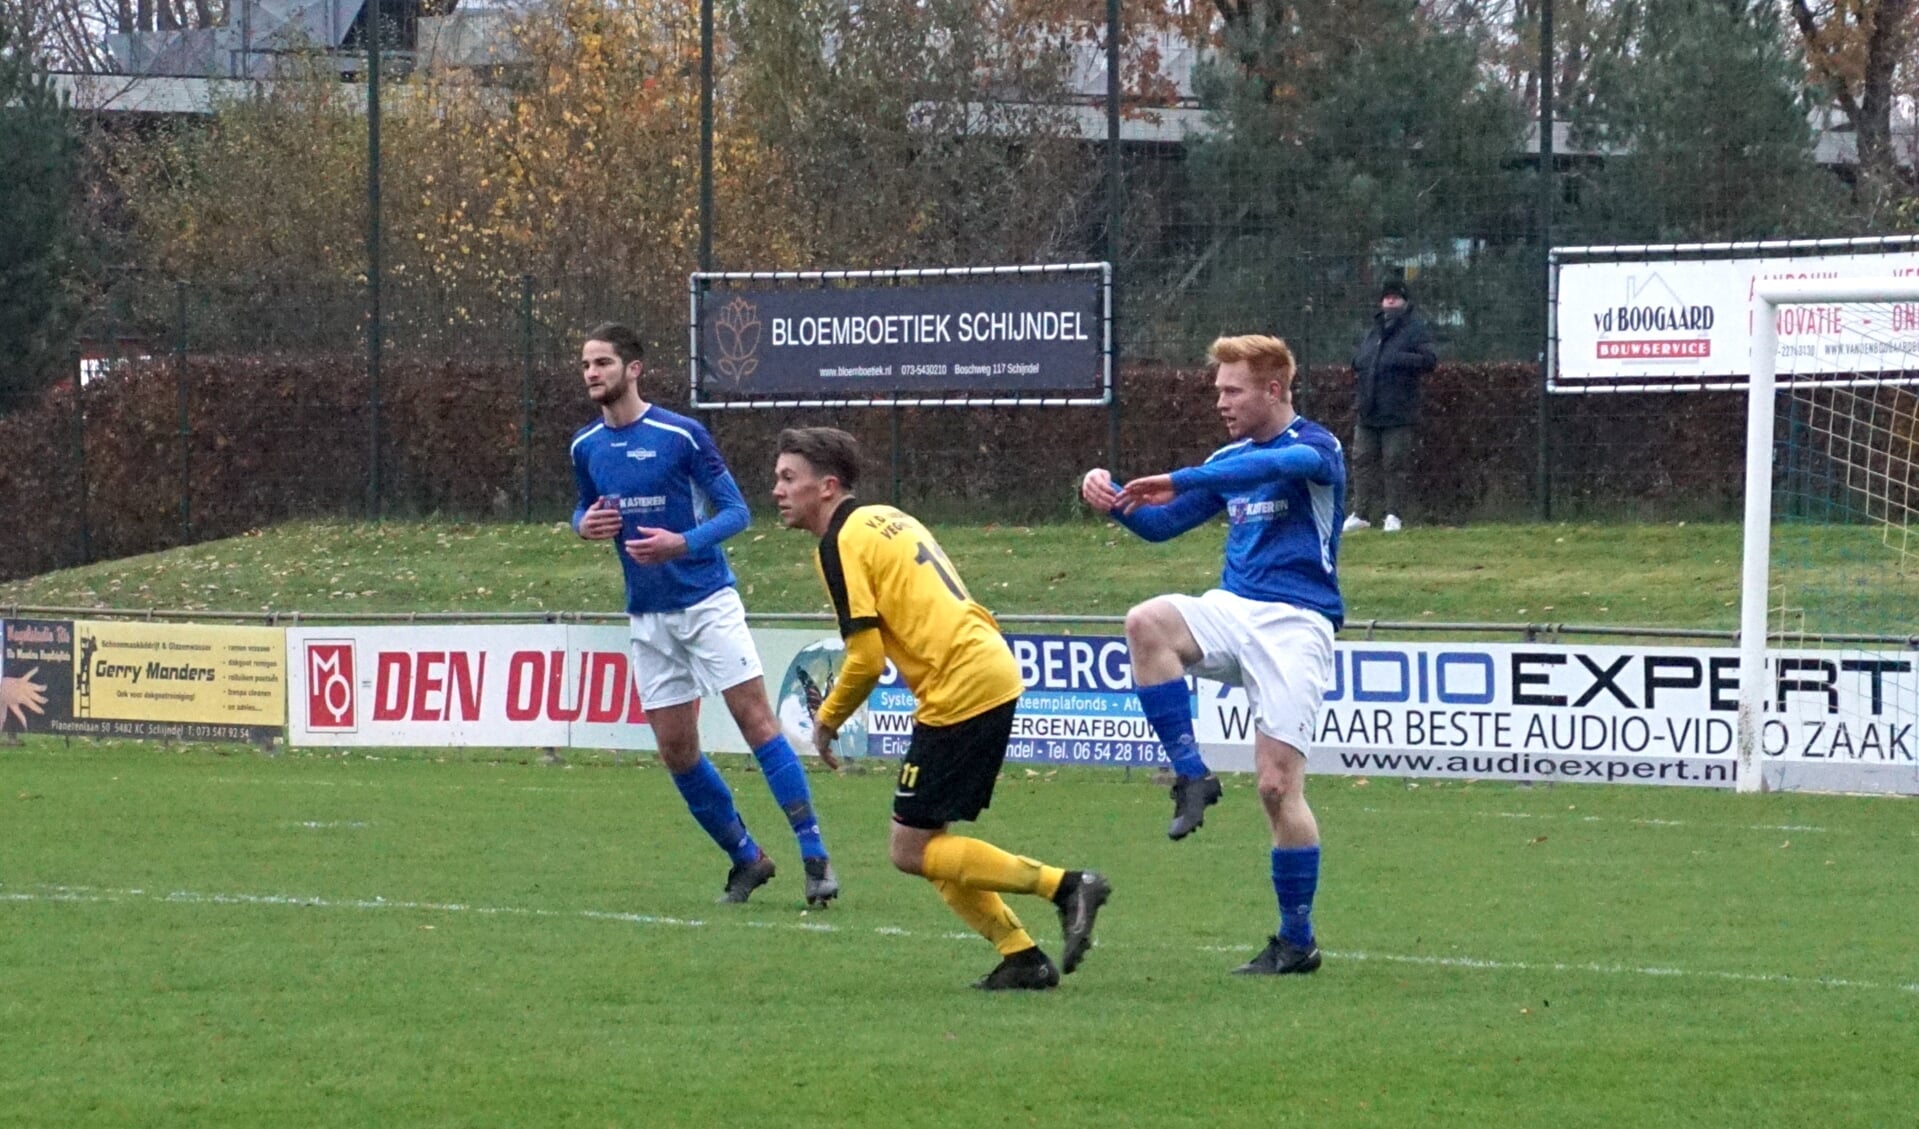 Avanti'31 won thuis met 4-0 van Vorstenbossche Boys.